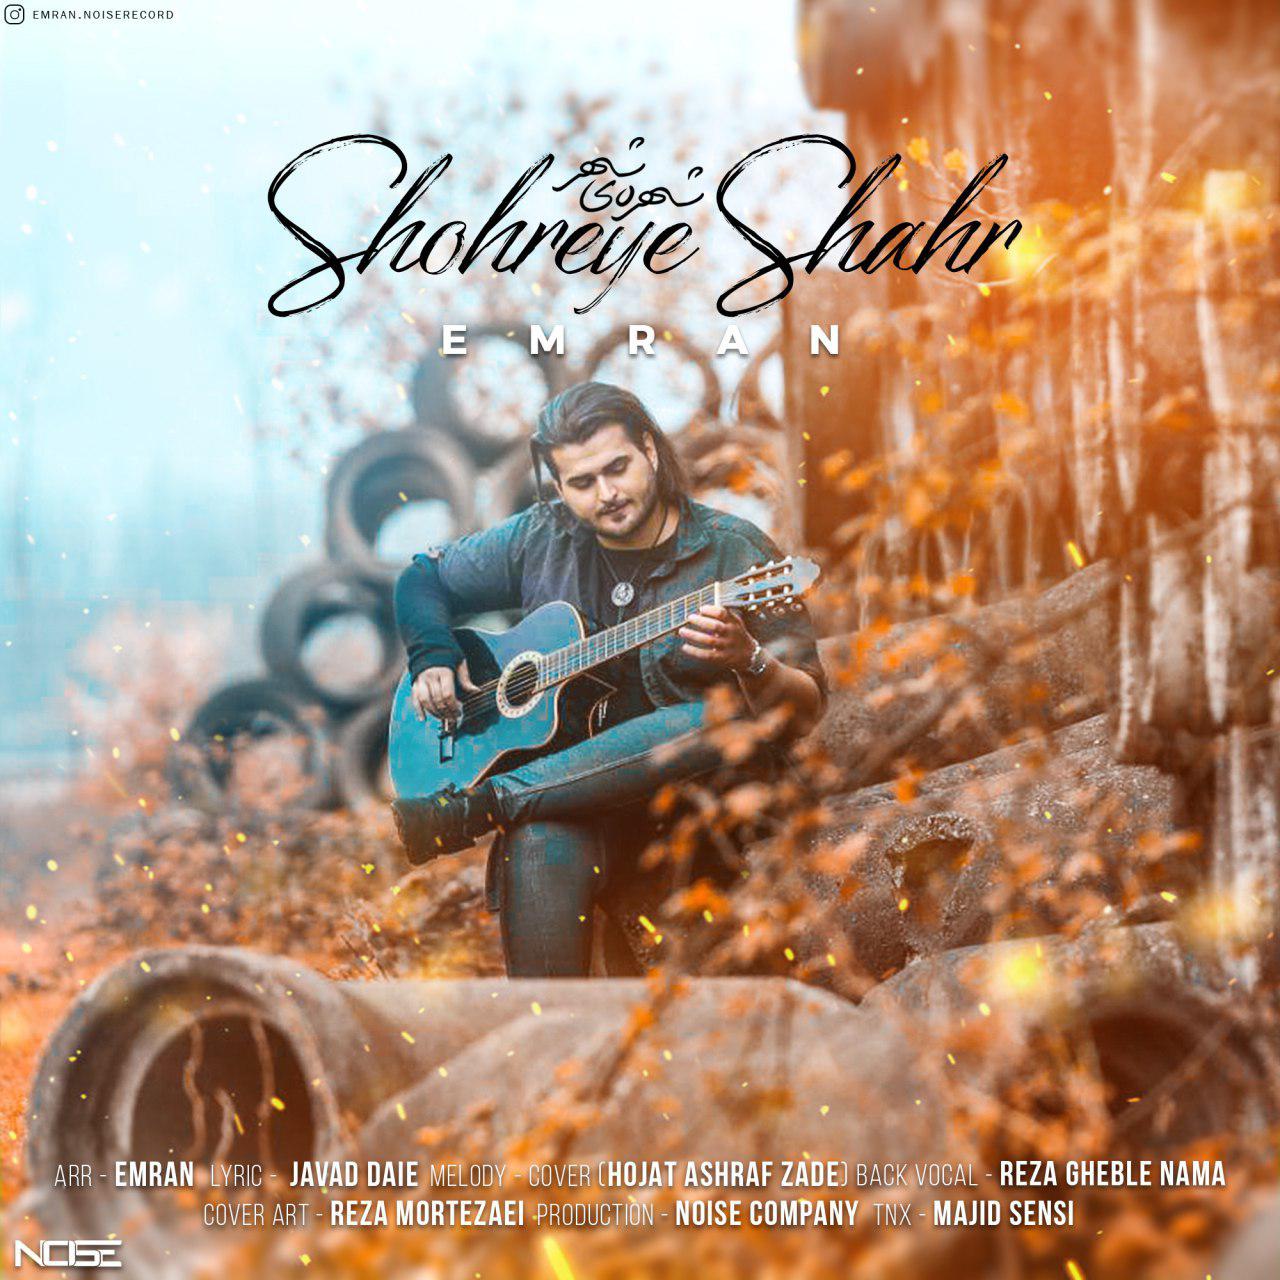  دانلود آهنگ جدید عمران - شهره ی شهر | Download New Music By Emran - Shohreye Shahr